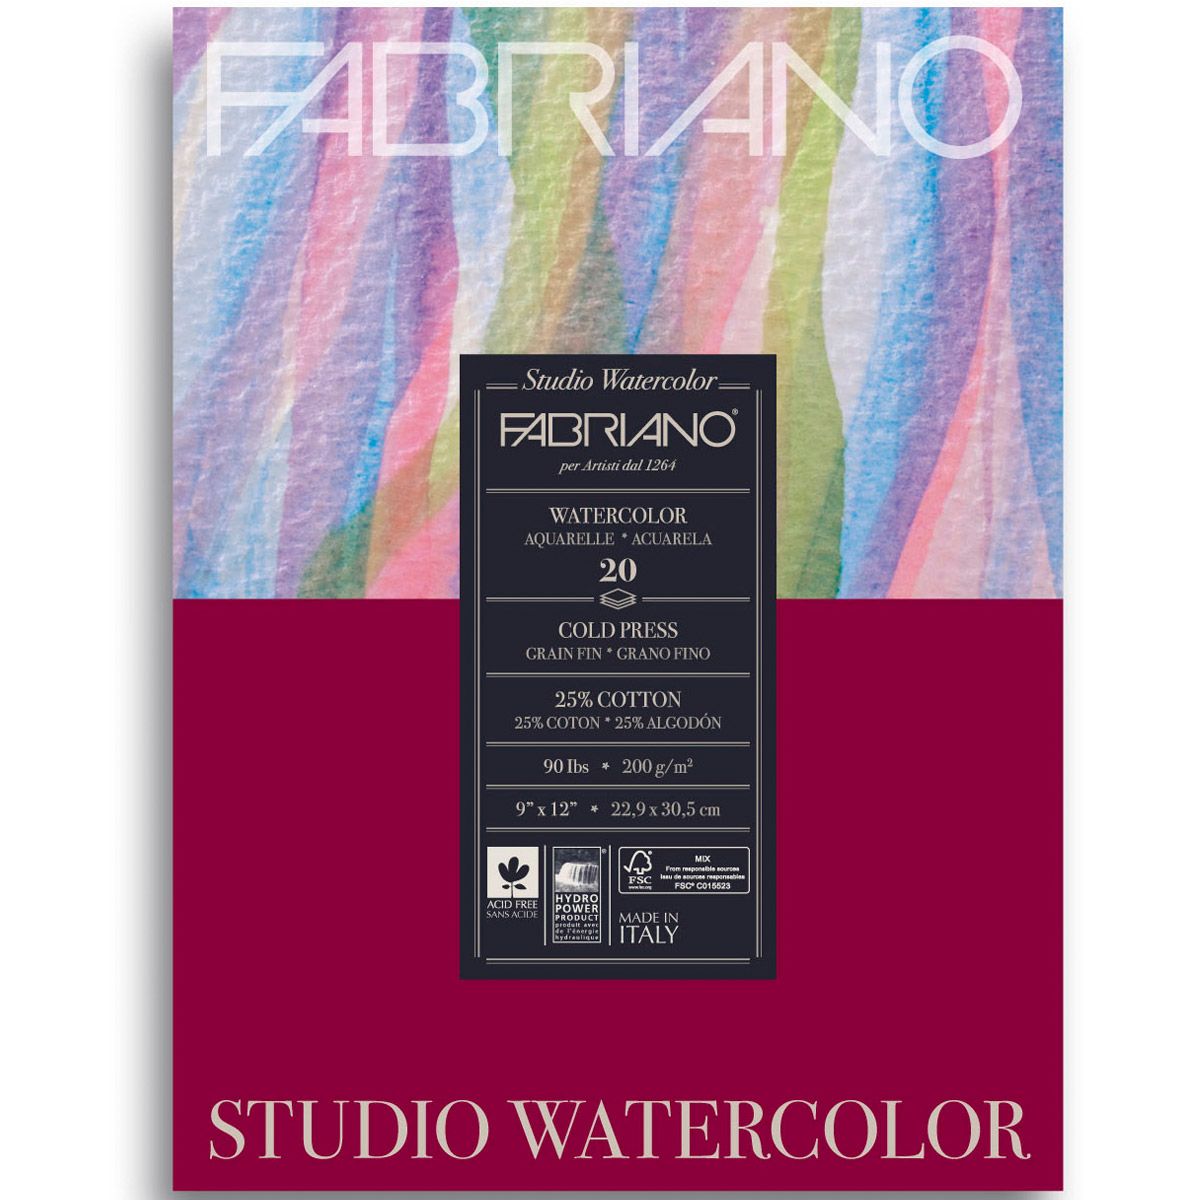 Fabriano Studio Watercolour Pad CP-20 sheets, 90lb 9x12 inch